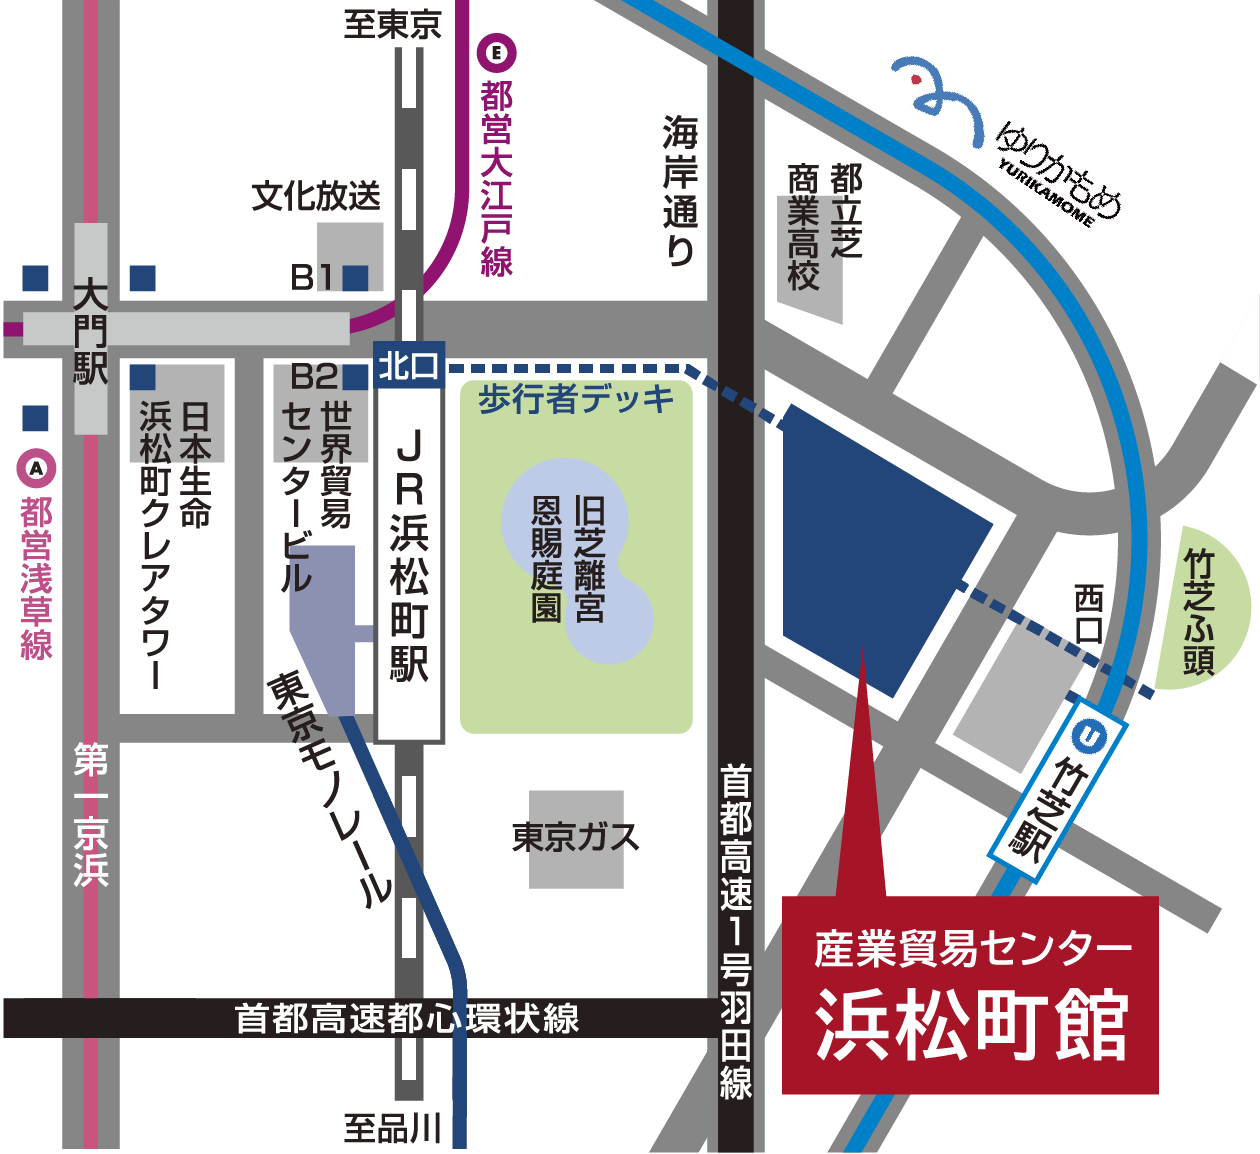 東京都立産業貿易センター 浜松町館 の地図